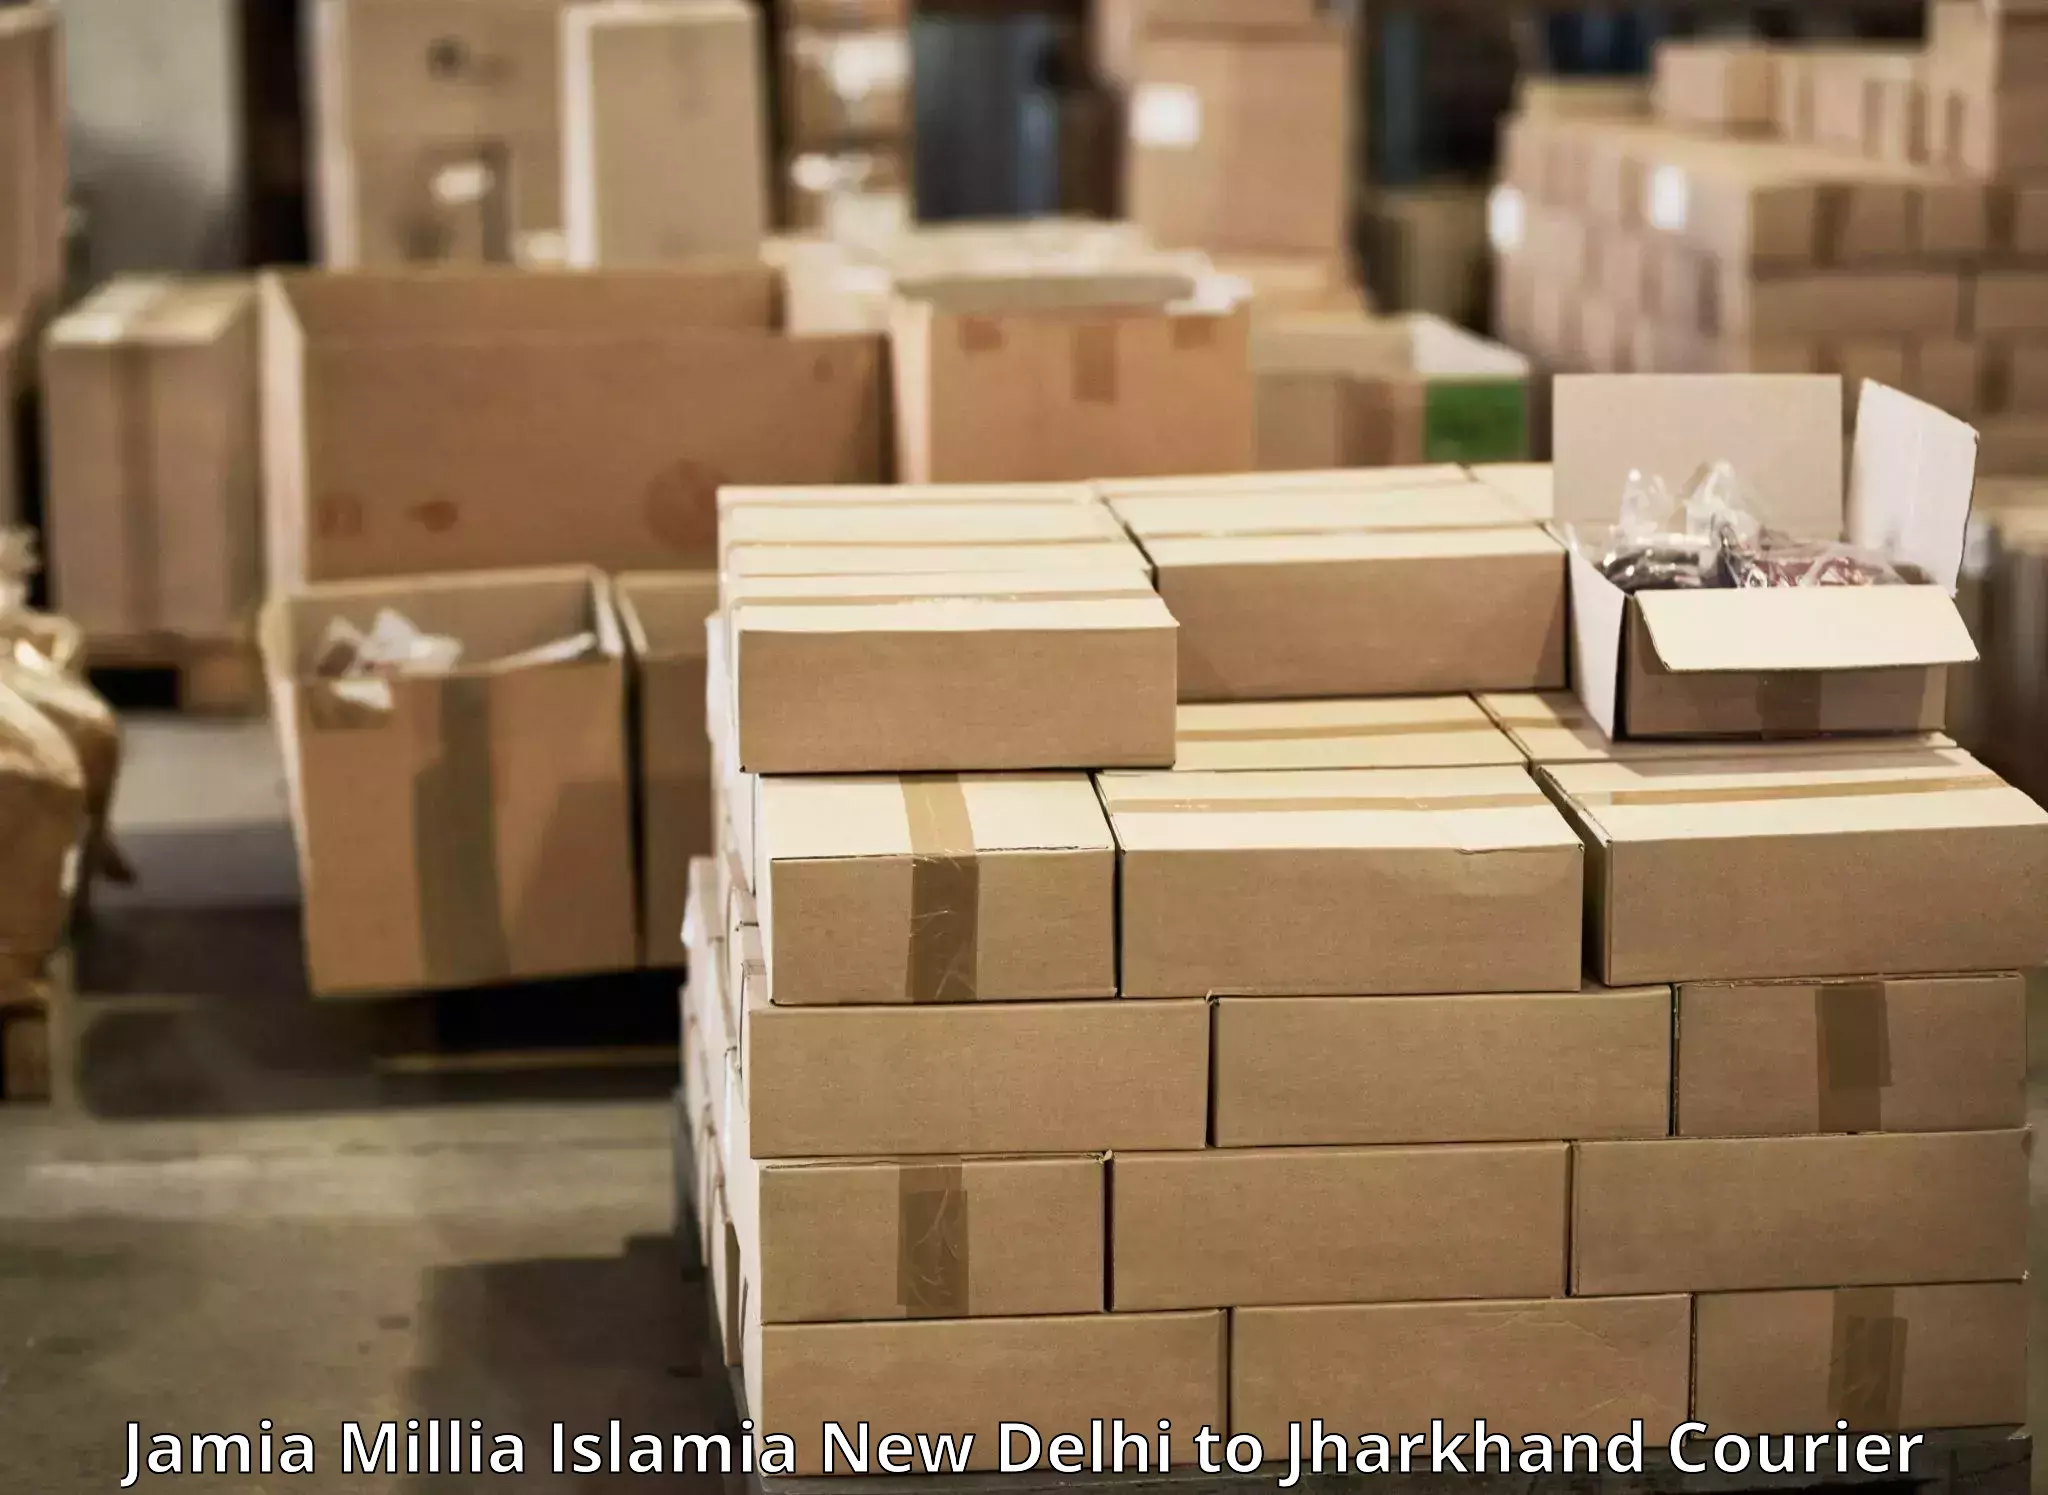 Professional courier services Jamia Millia Islamia New Delhi to Chakradharpur